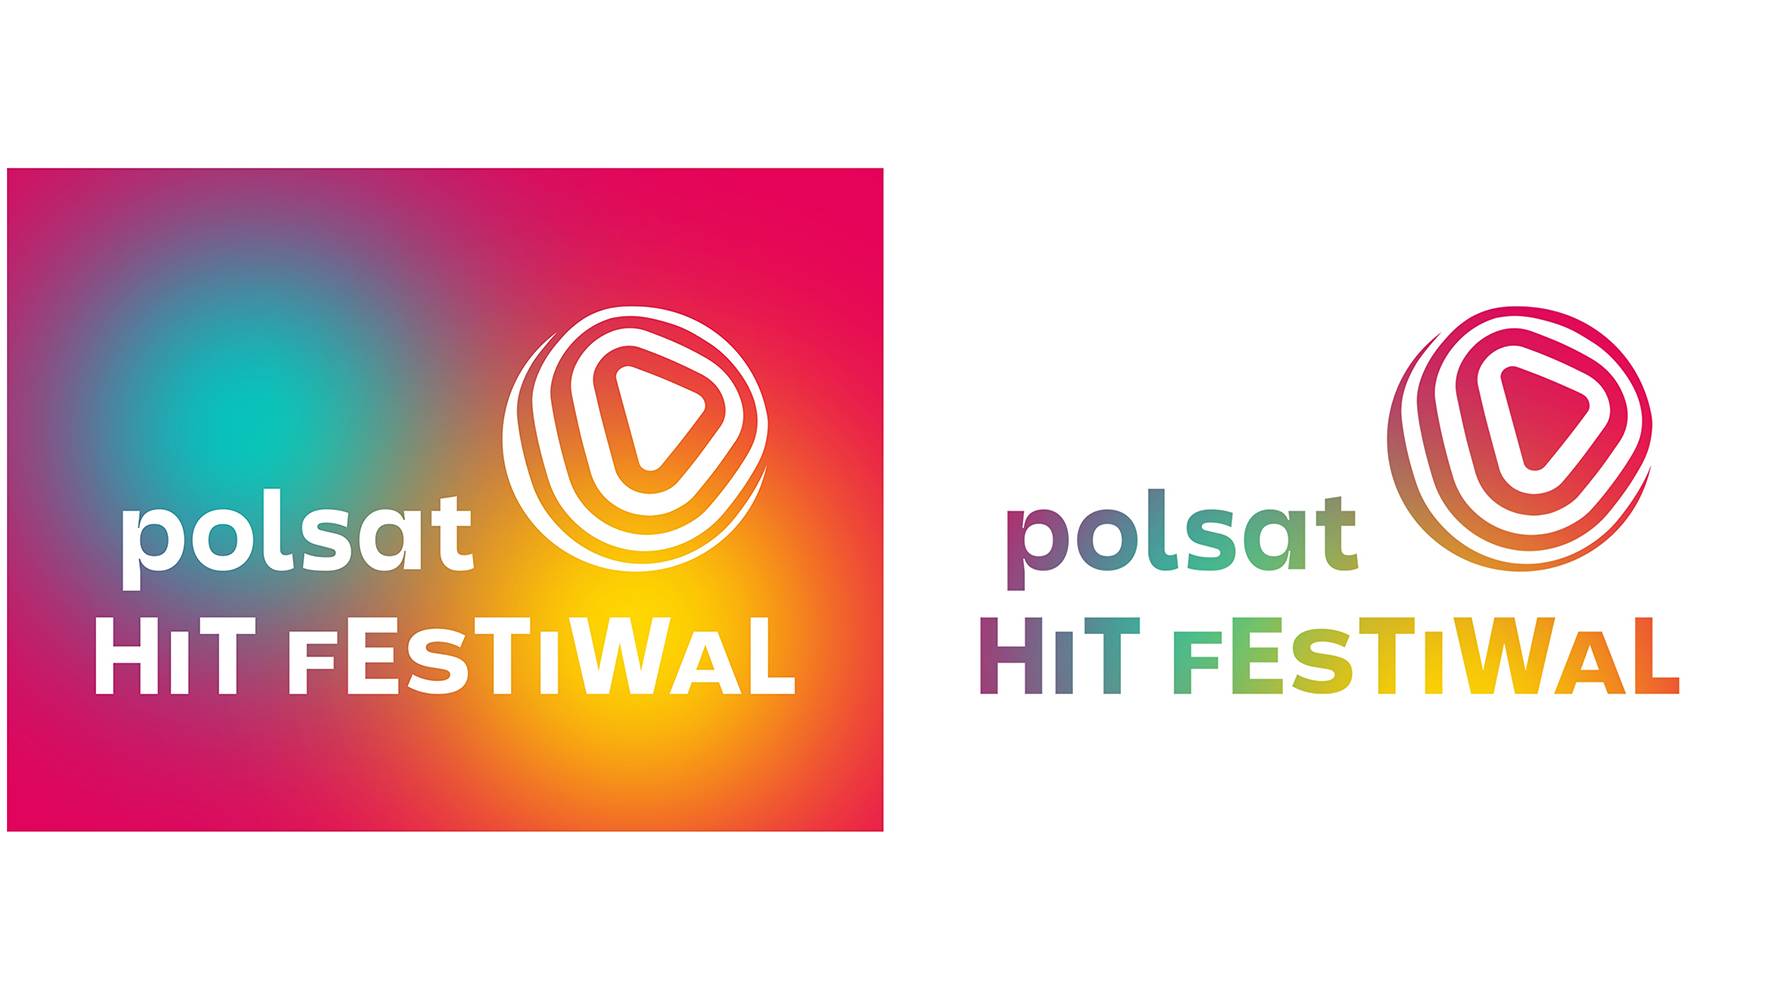 Polsat Hit Festiwal: Nowa nazwa i identyfikacja wizualna eventu - Polsat.pl